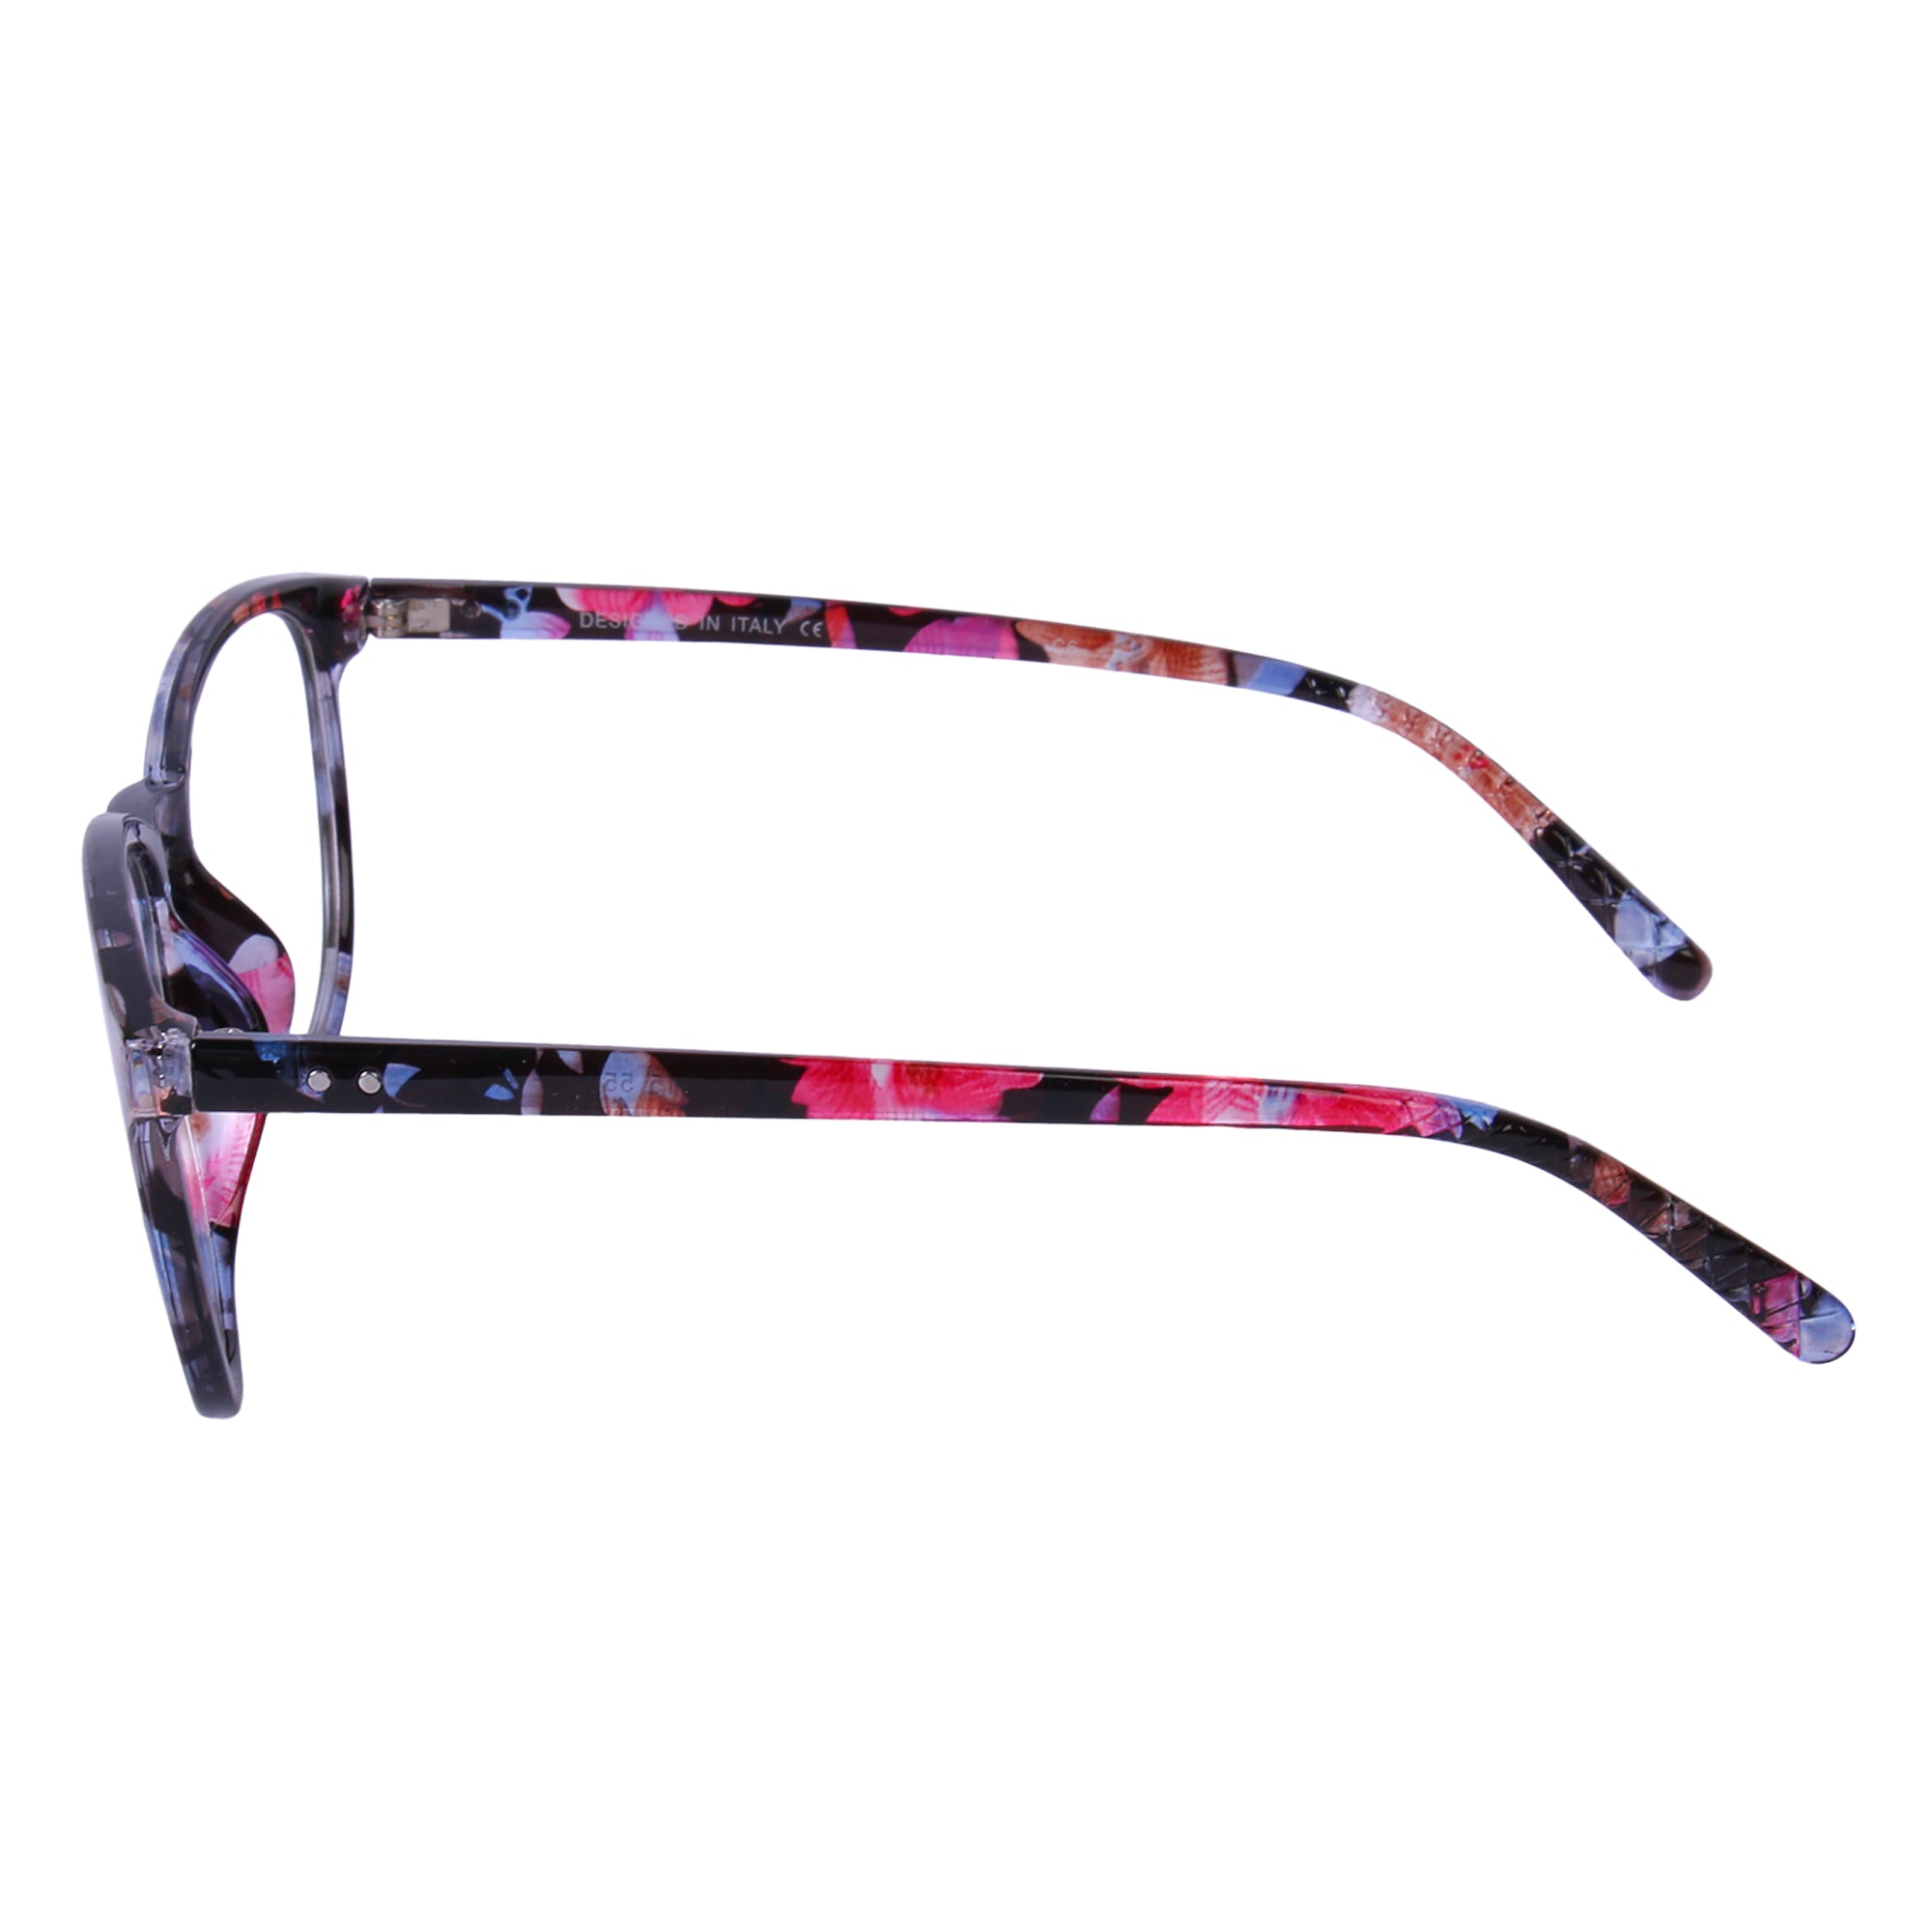 Multi-Color Round Eyeglasses - L6015 C6